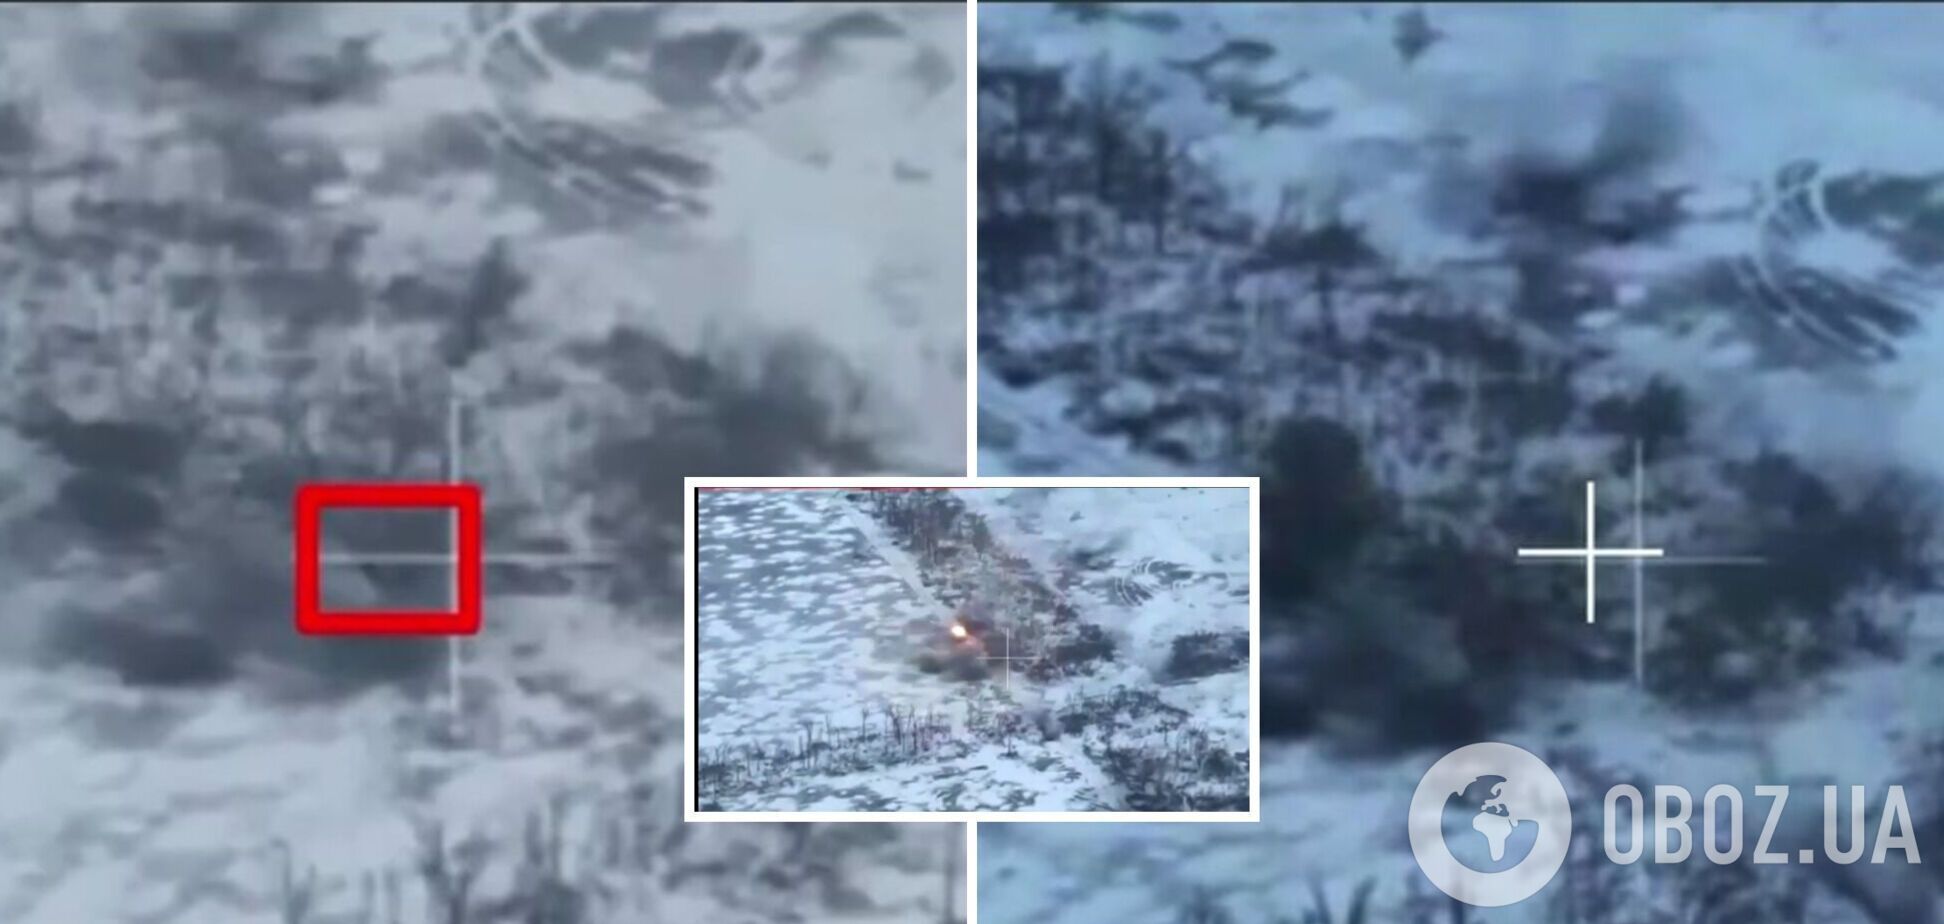 Защитники показали видео уничтожения двух российских танков